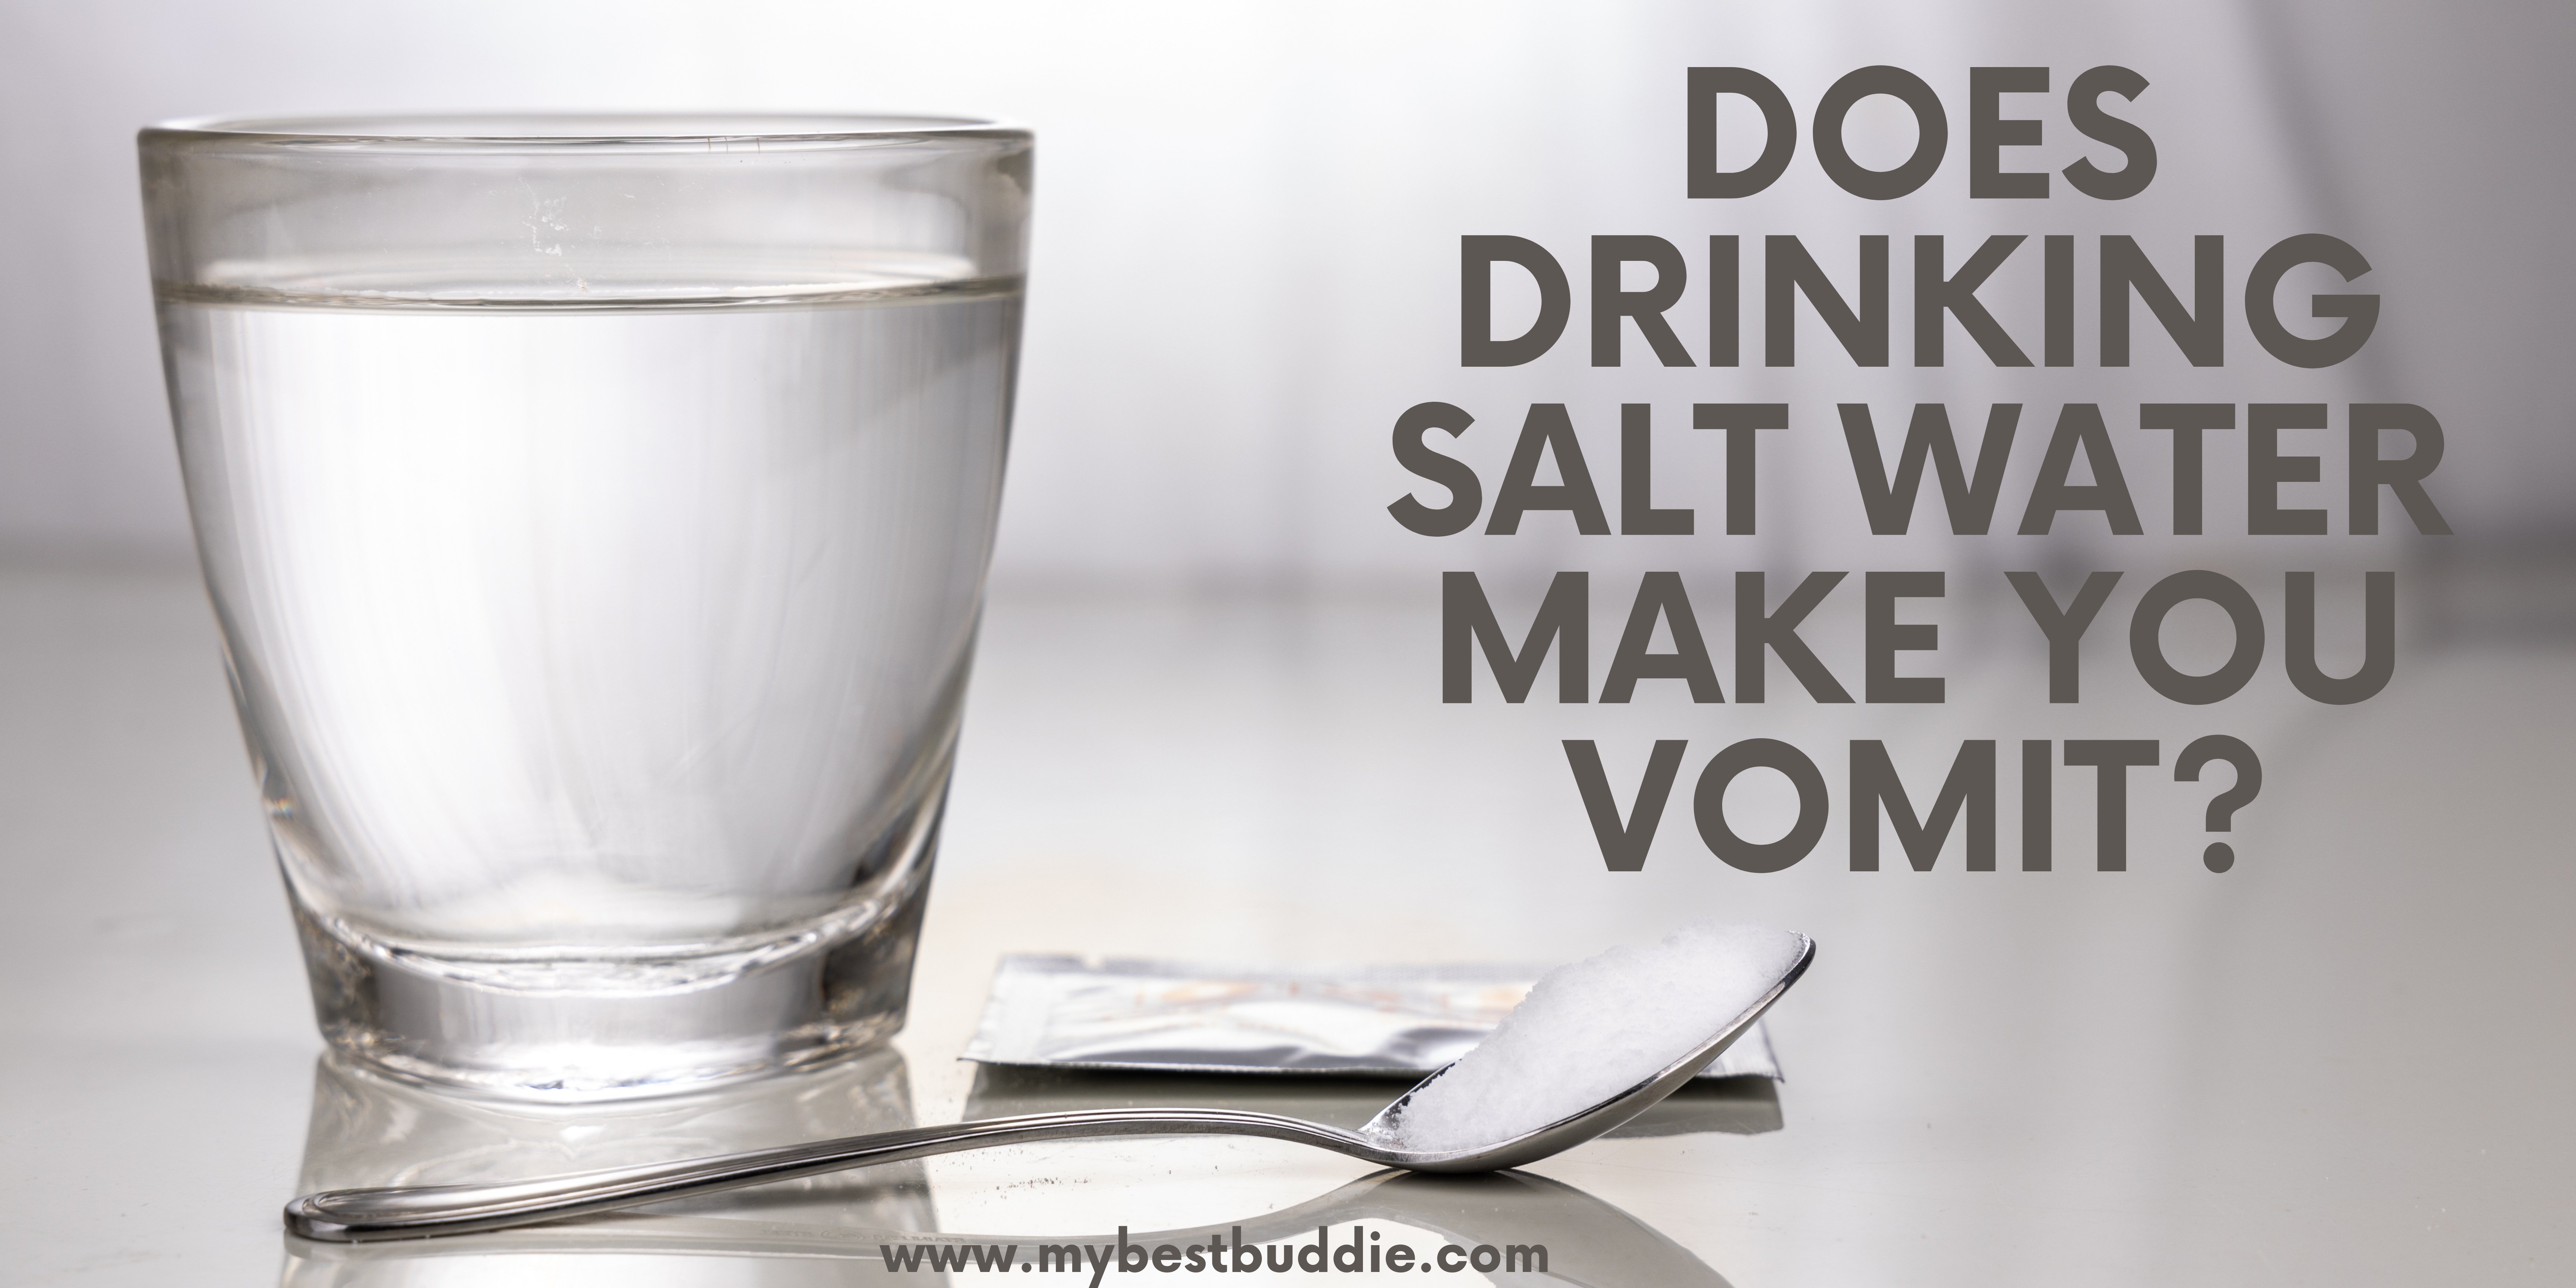 Does Drinking Salt Water make you vomit?